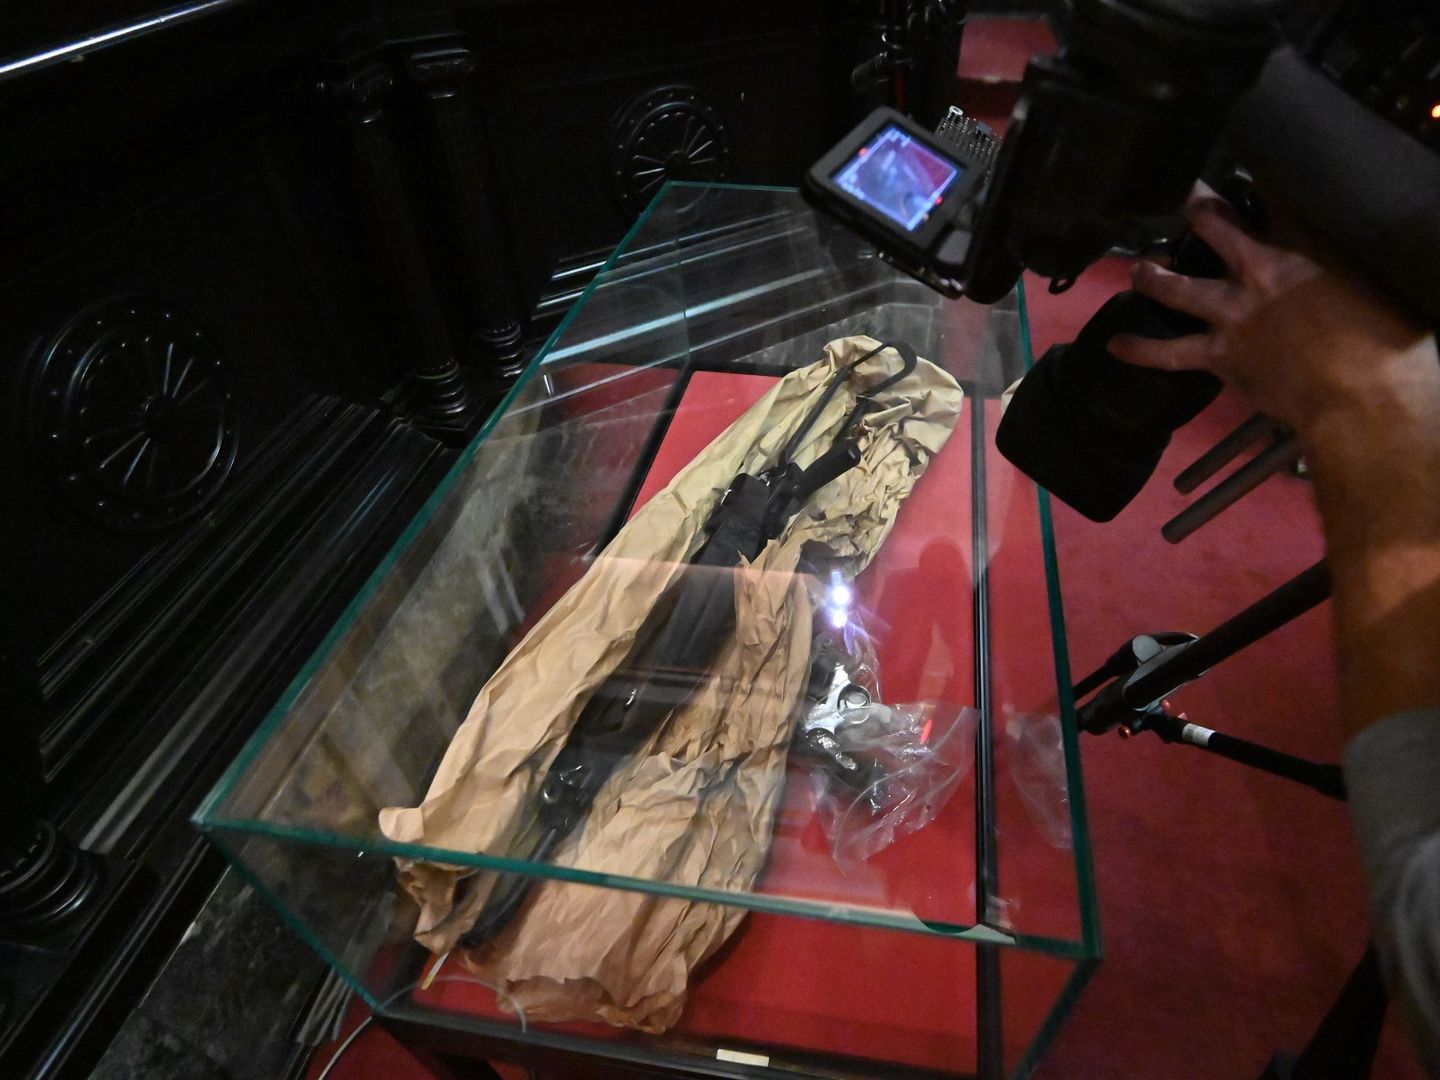 El Museo Judío de Bruselas fue atacado en 2014 causando cuatro muertos